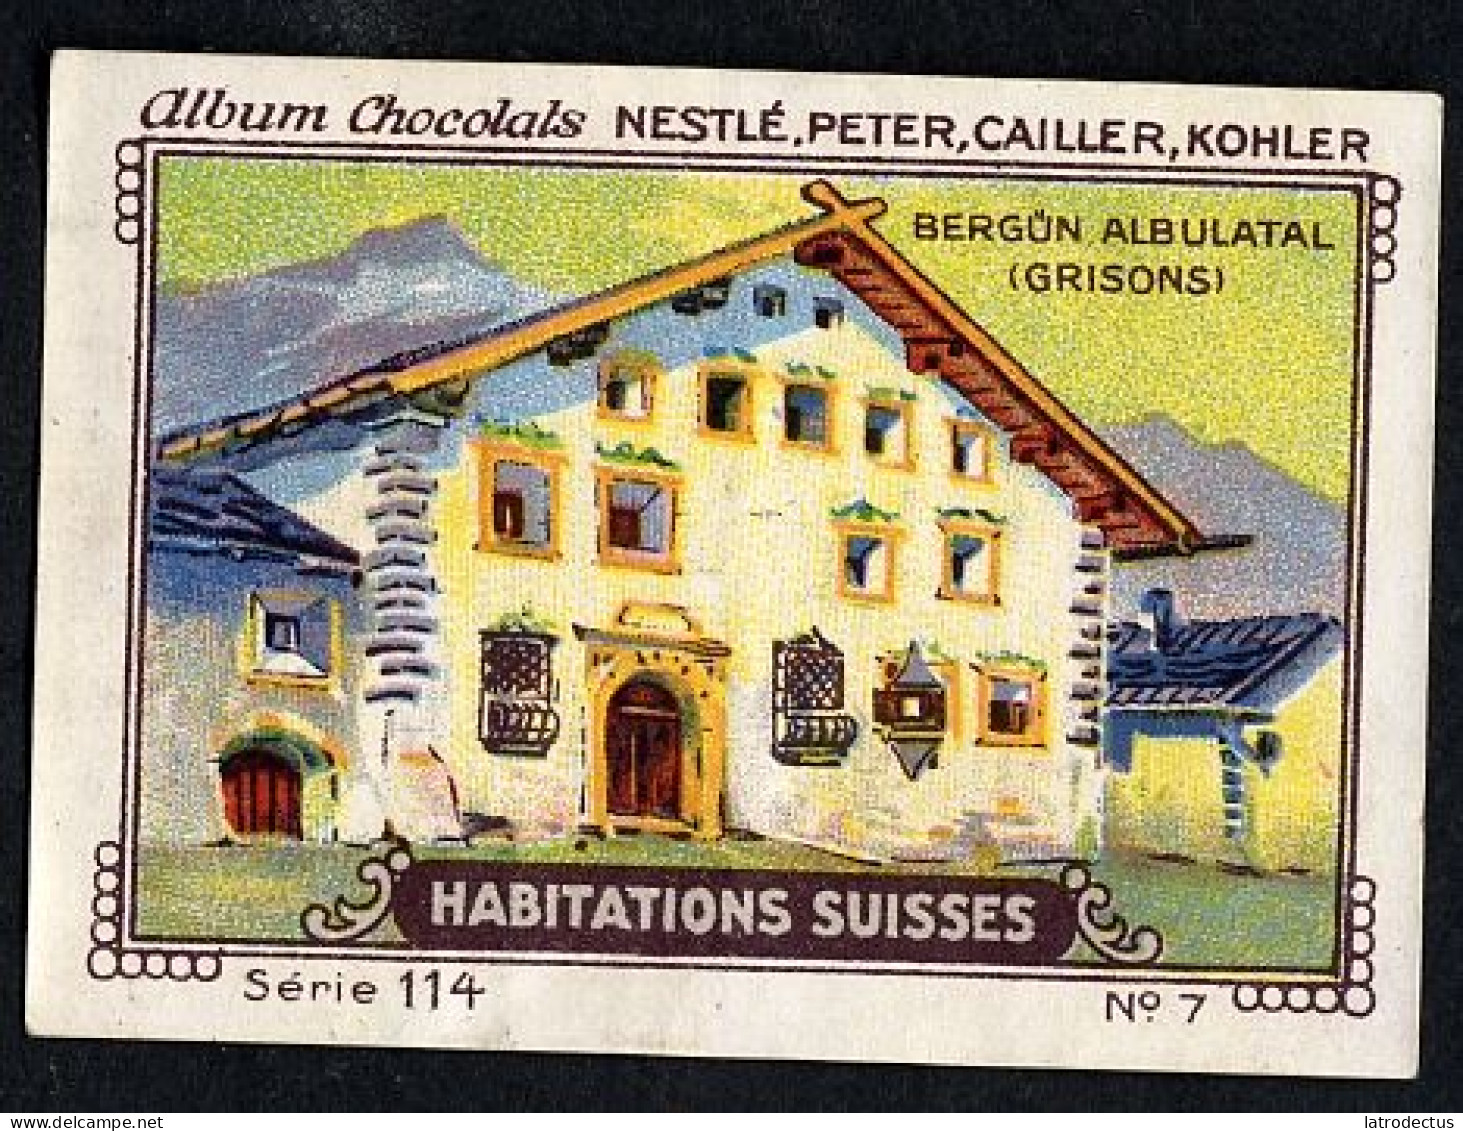 Nestlé - 114 - Habitations Suisses, Swiss Houses, Schweizer Häuser - 7 - Bergün Albulatal Grisons - Nestlé